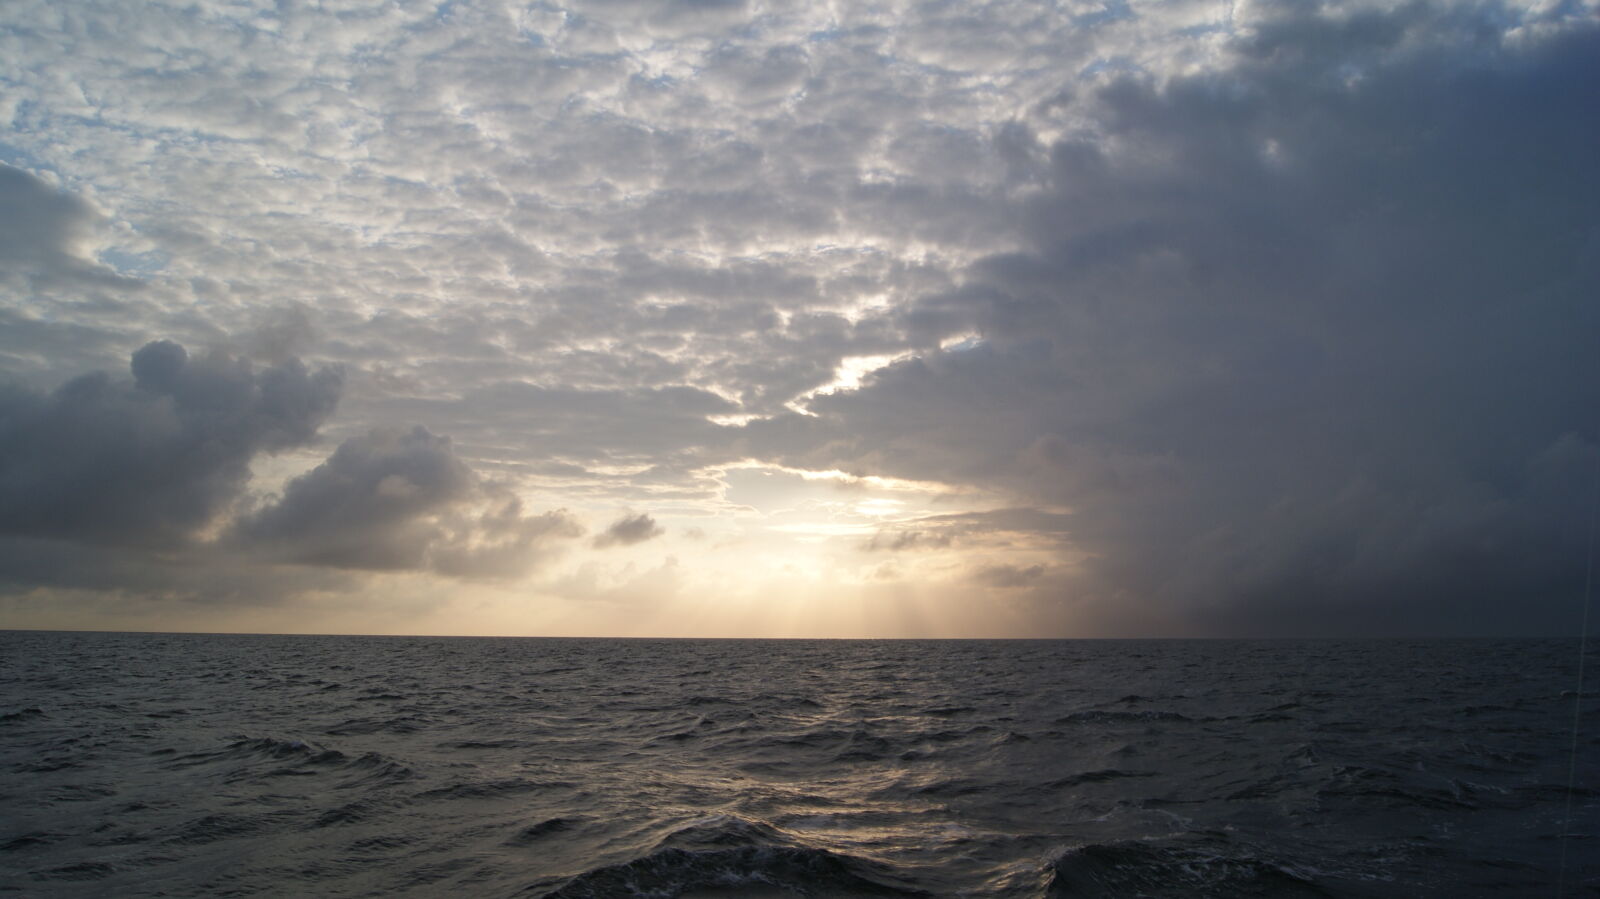 Sony DT 18-55mm F3.5-5.6 SAM sample photo. Cloud, ocean, rain, sea photography